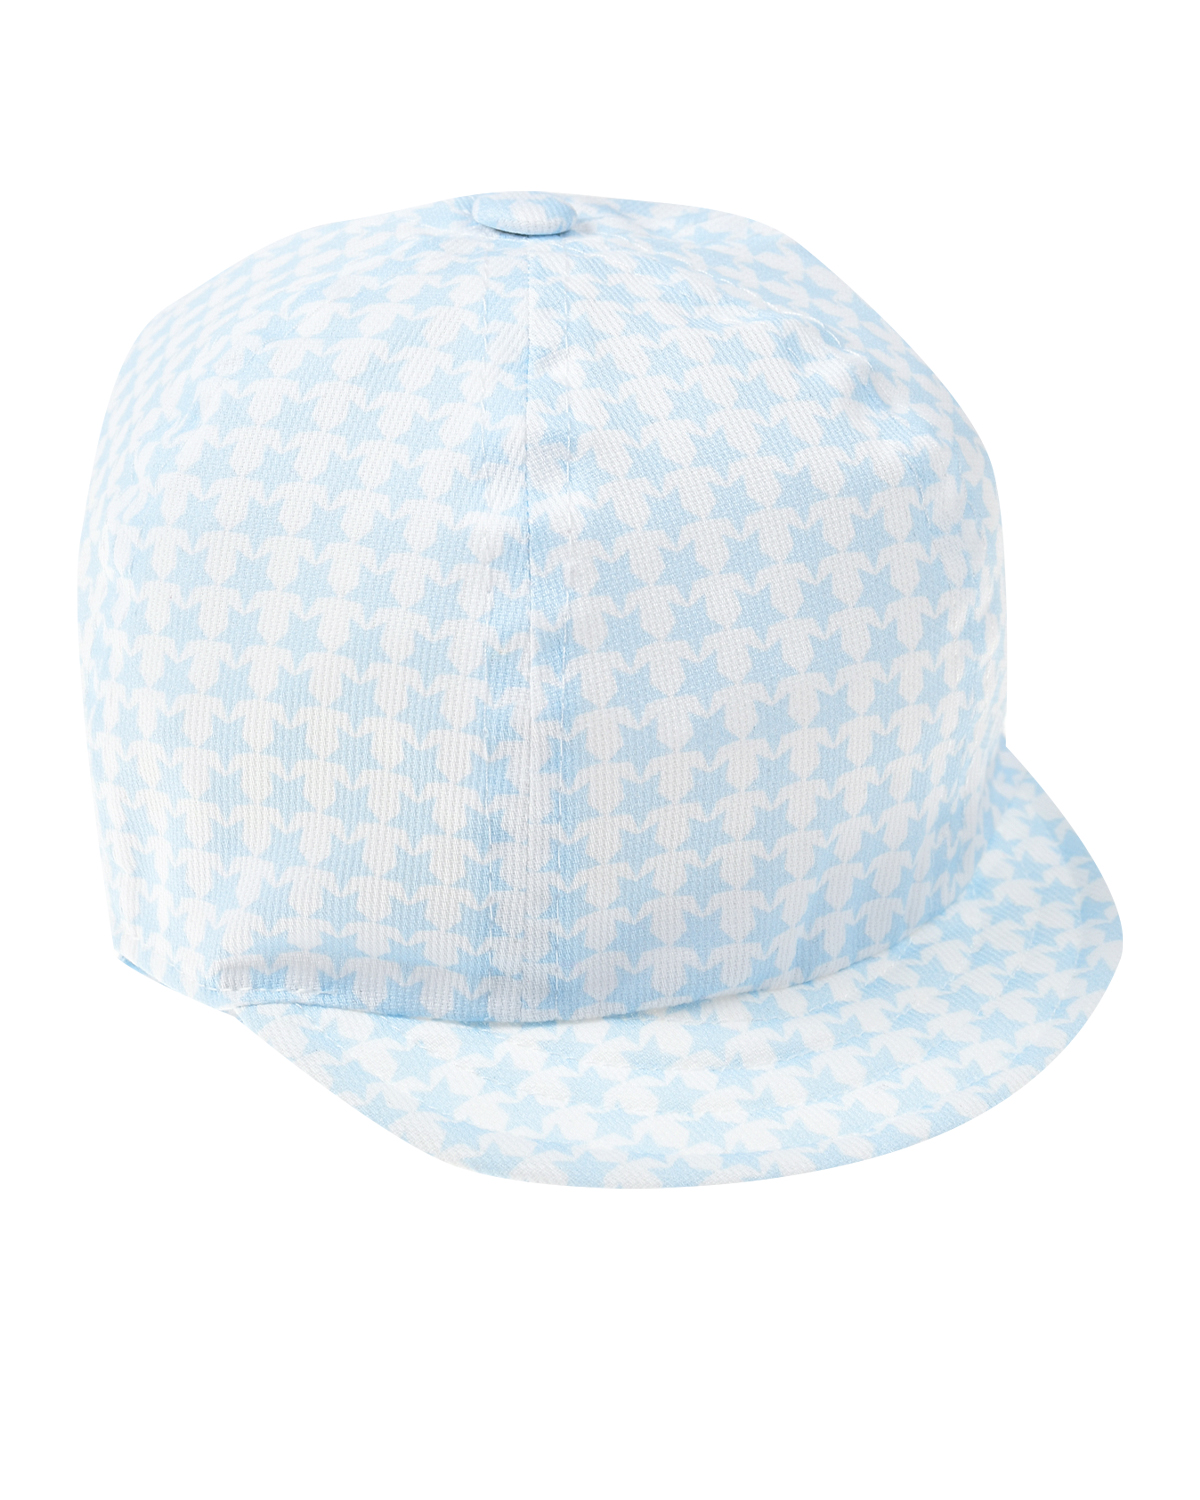 Голубая кепка с принтом "в звездочку" Catya, размер 50, цвет голубой